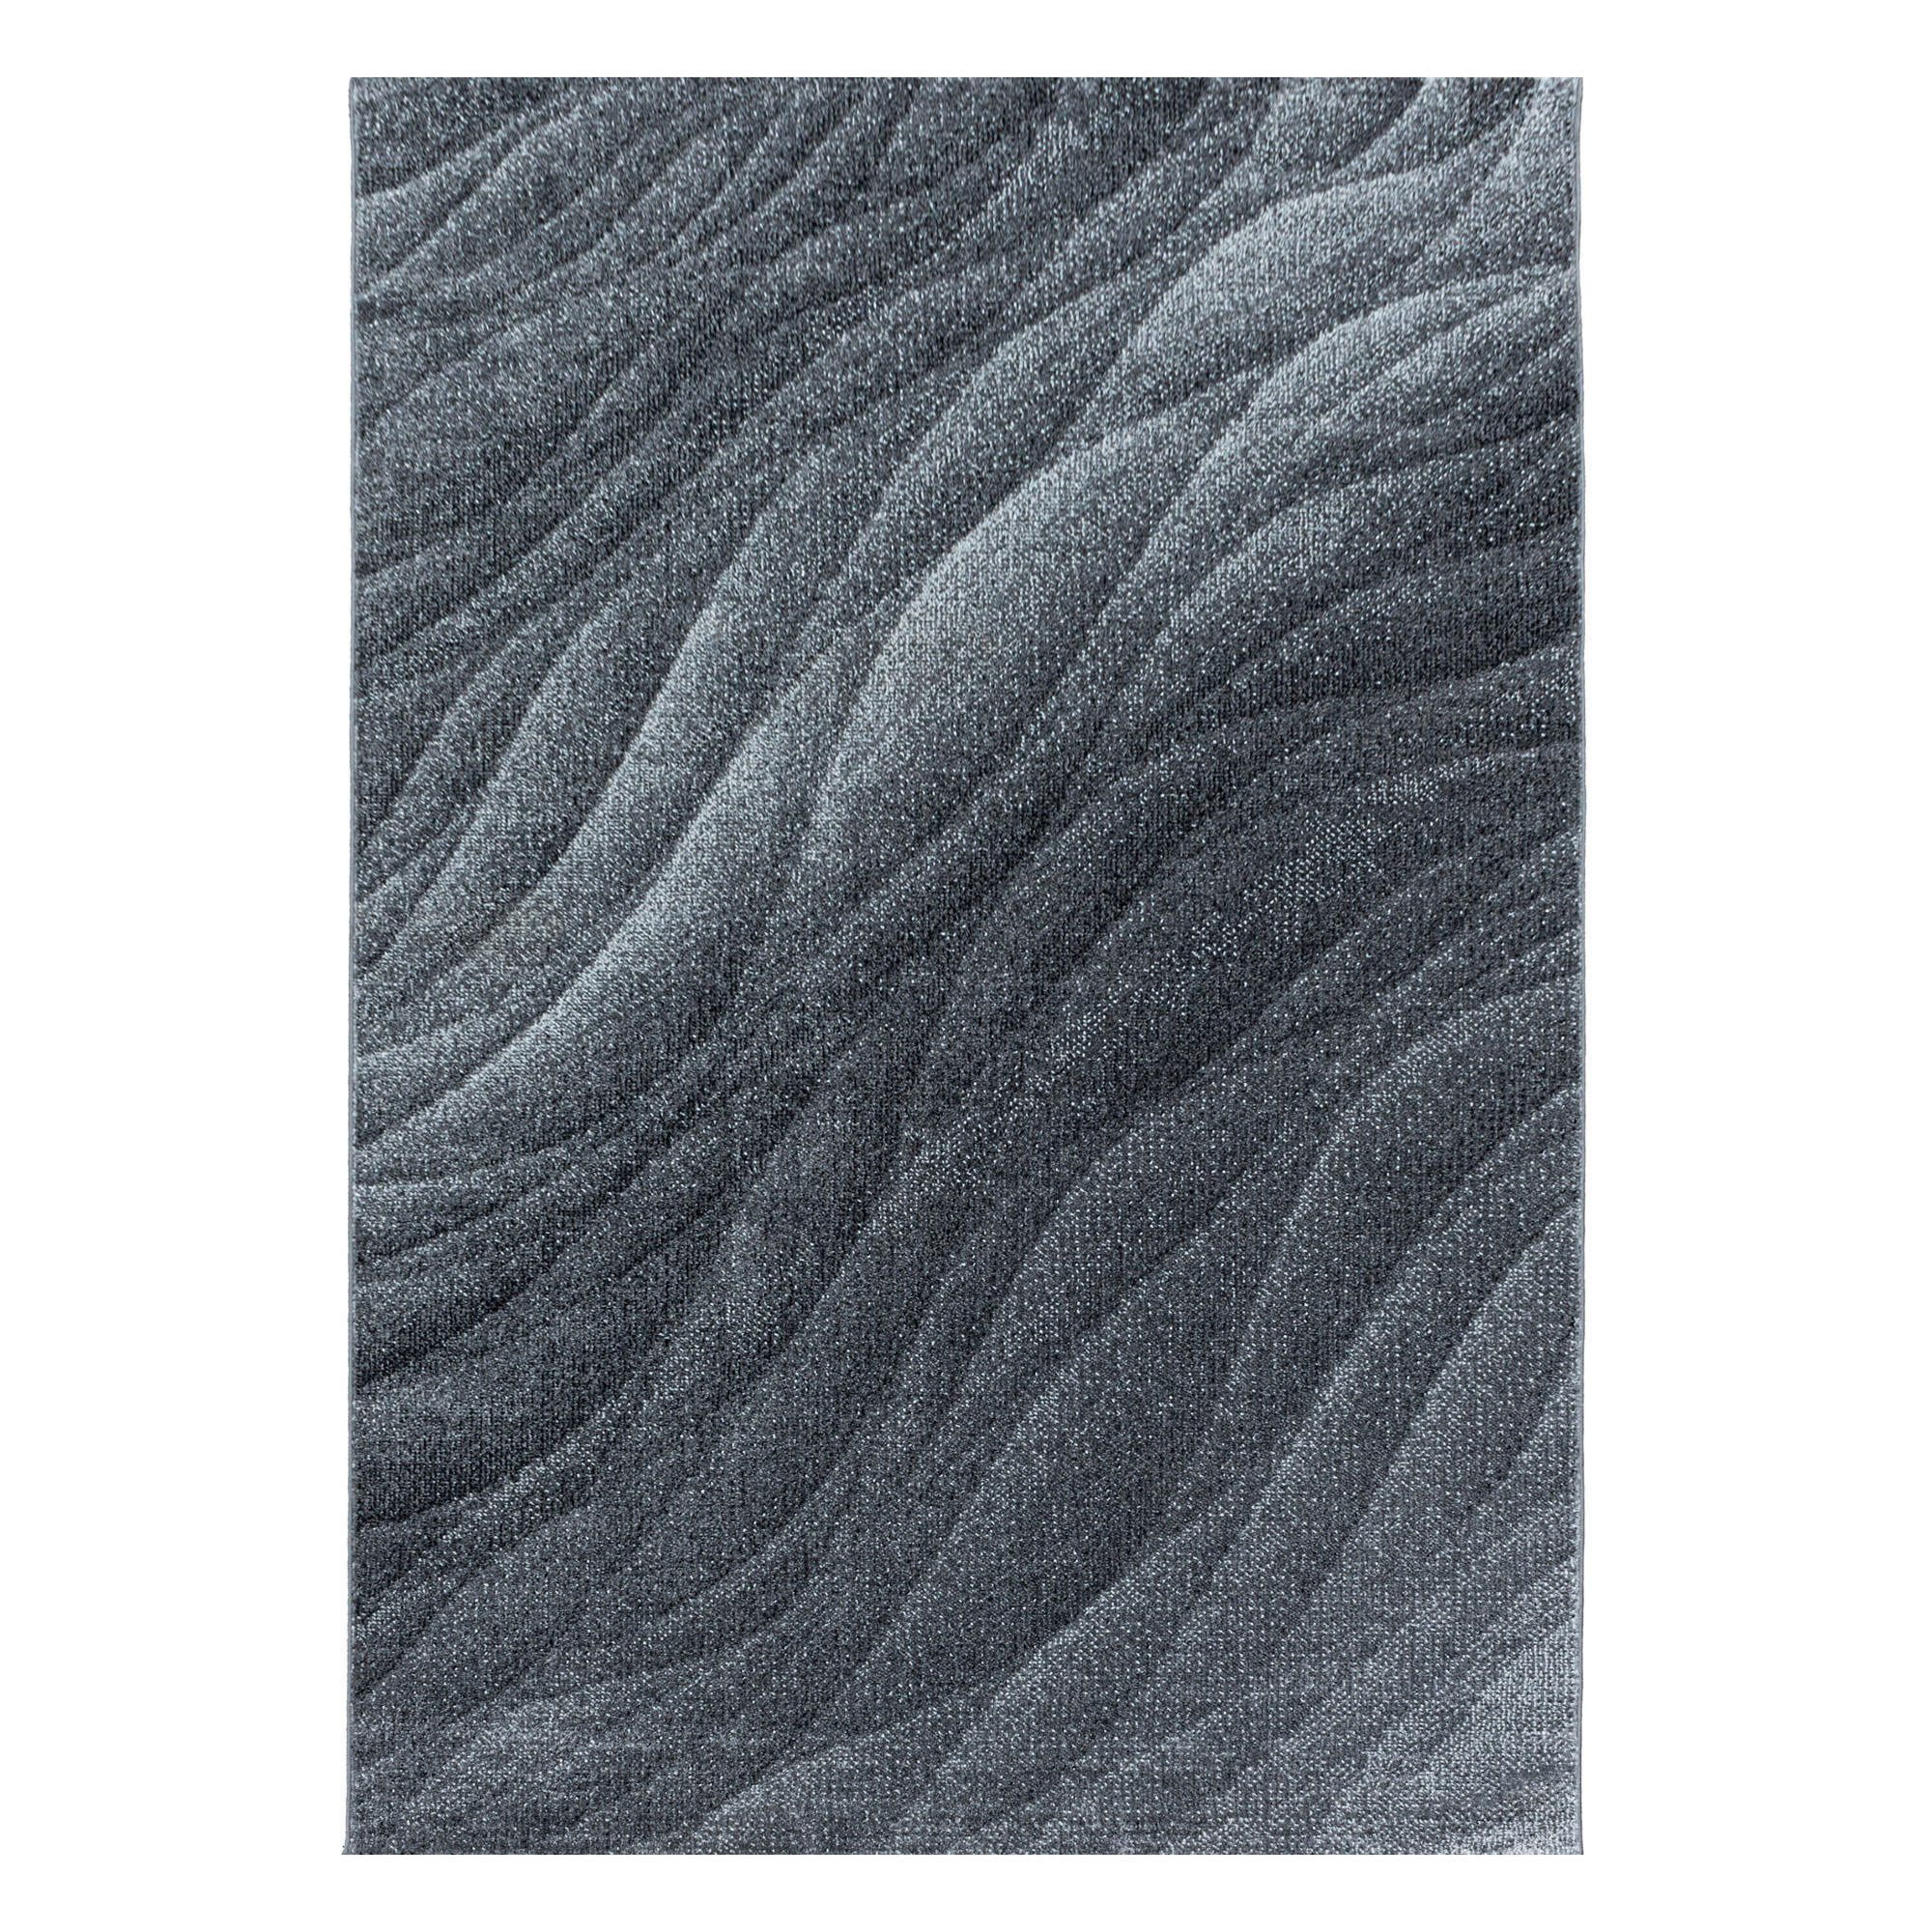 WEBTEPPICH  240/340 cm  Grau   - Grau, Design, Textil (240/340cm) - Novel